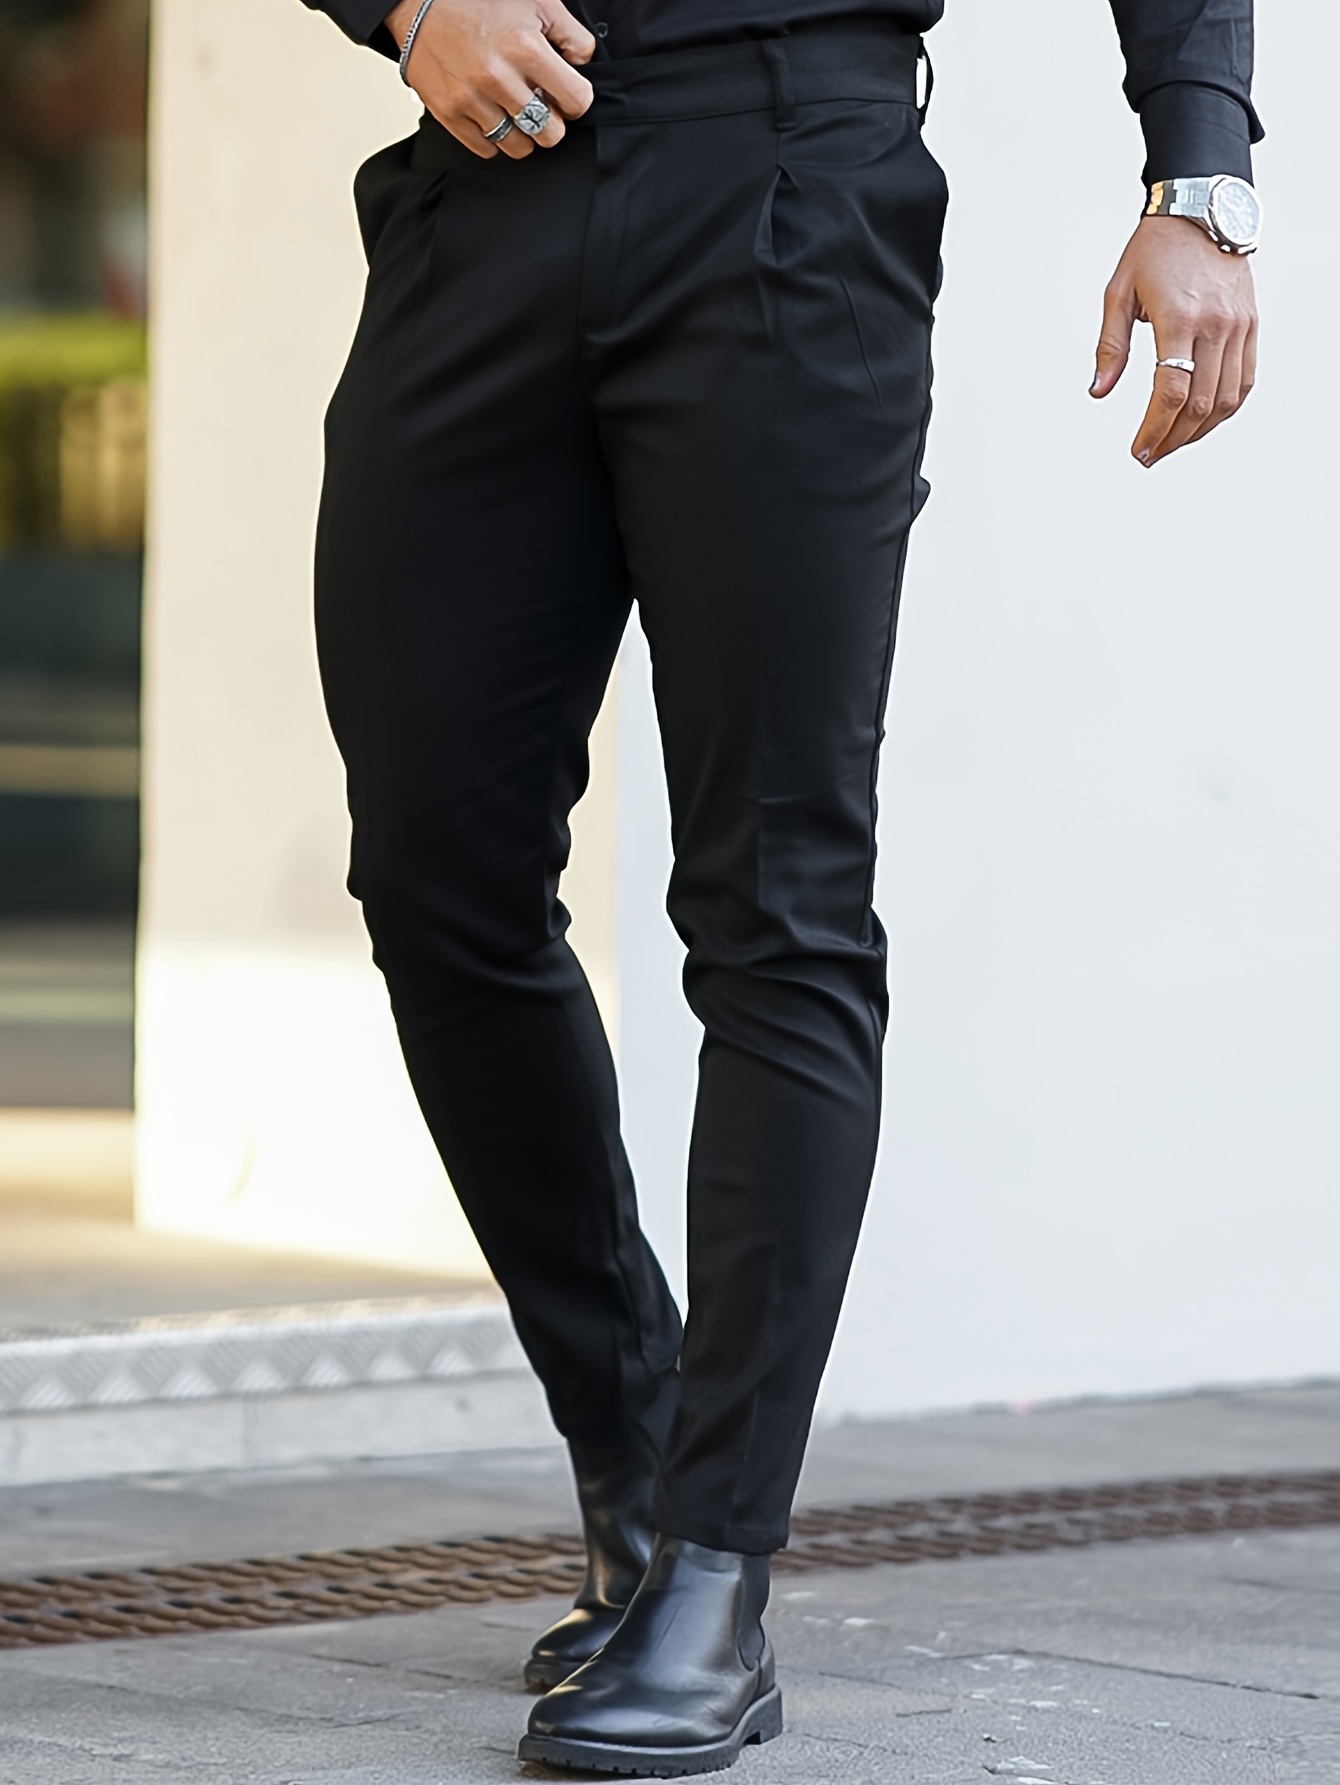 Men's Black Dress Pants - Men''s Slacks - Express